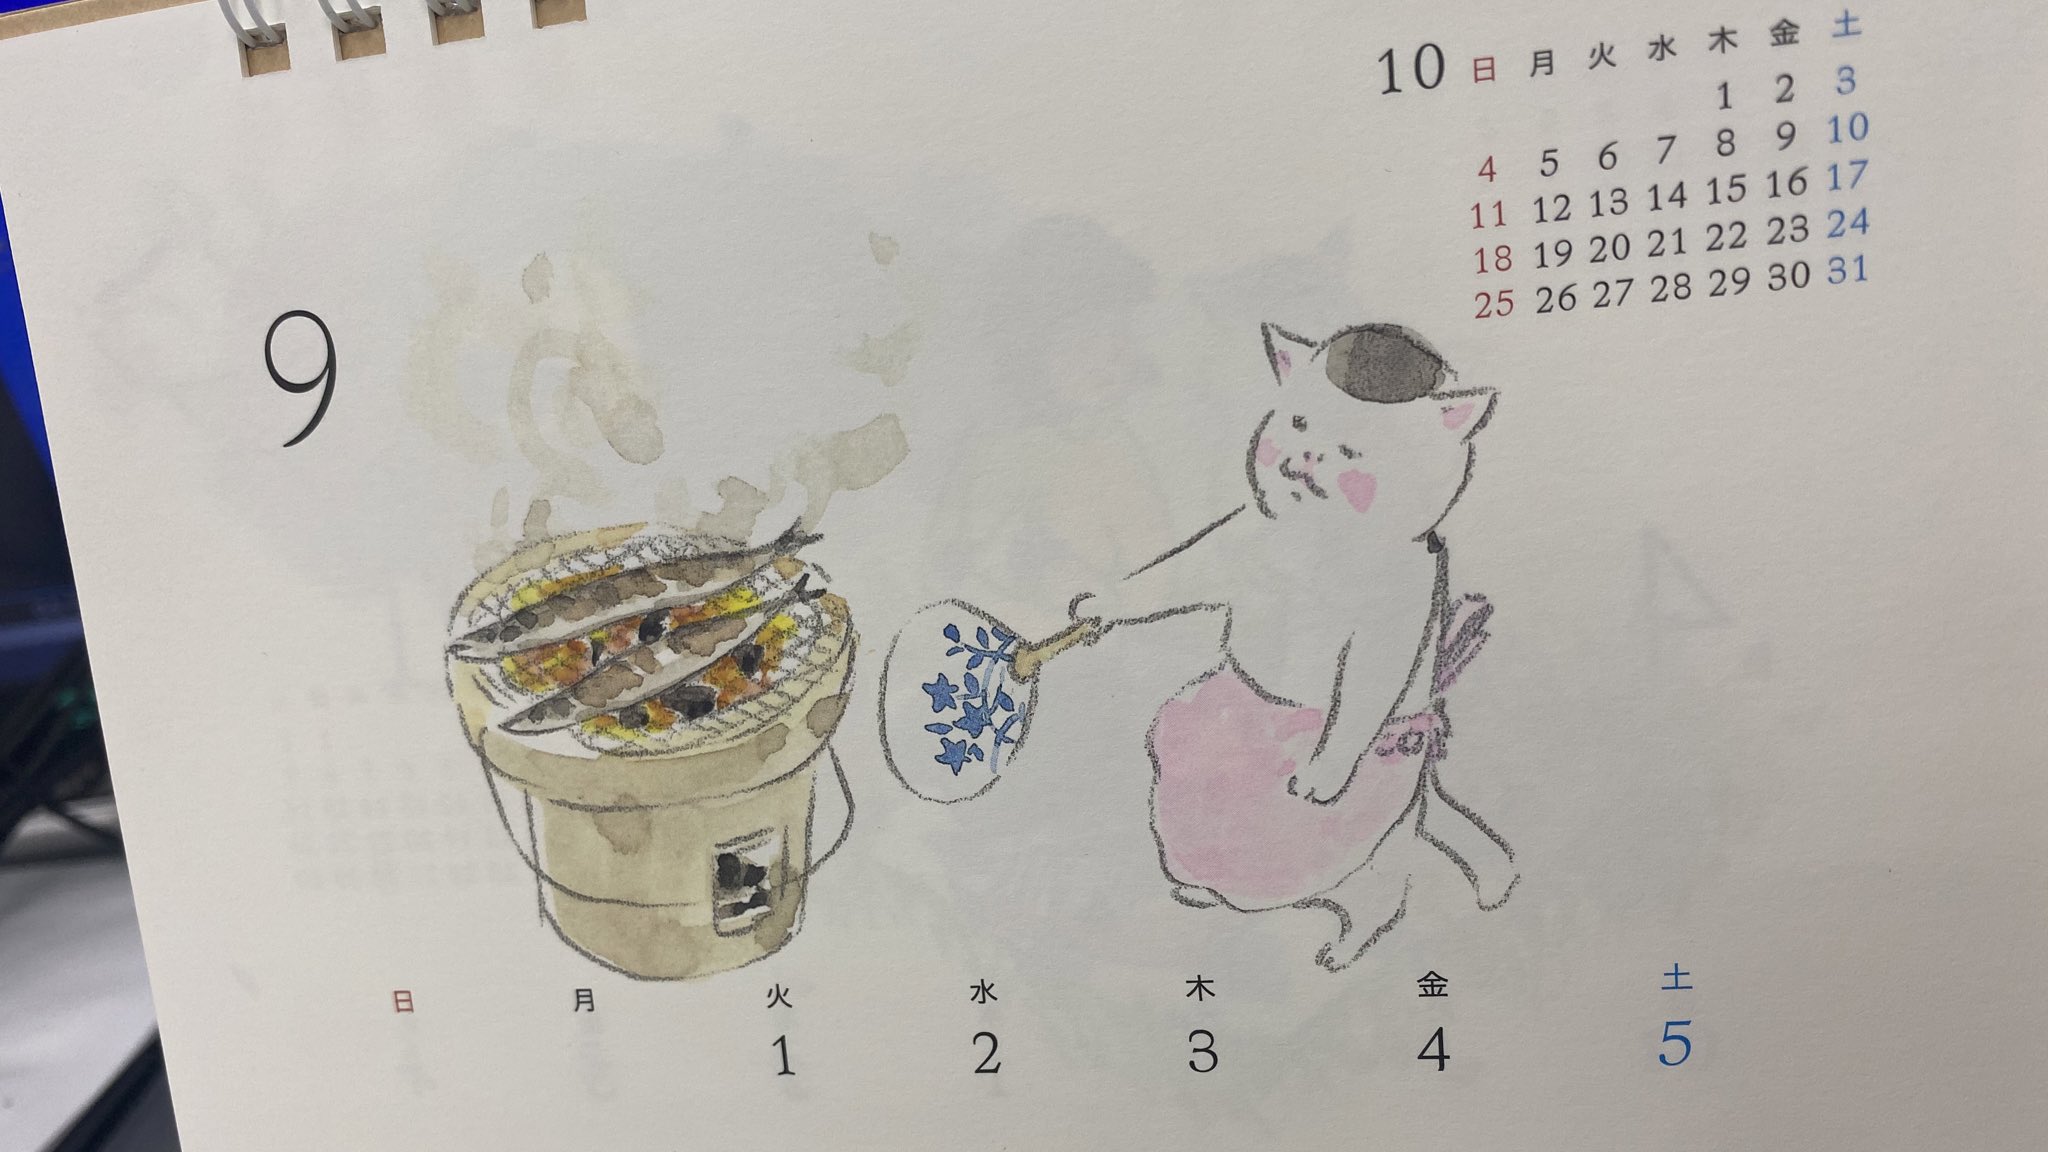 きょうの猫村さんドラマ公式 Blu Ray Lineスタンプ発売中ฅ ฅ ෆ ෆ サンマ食べたいです ฅ ฅ きょうの猫村さん T Co Vo3t0uypni Twitter